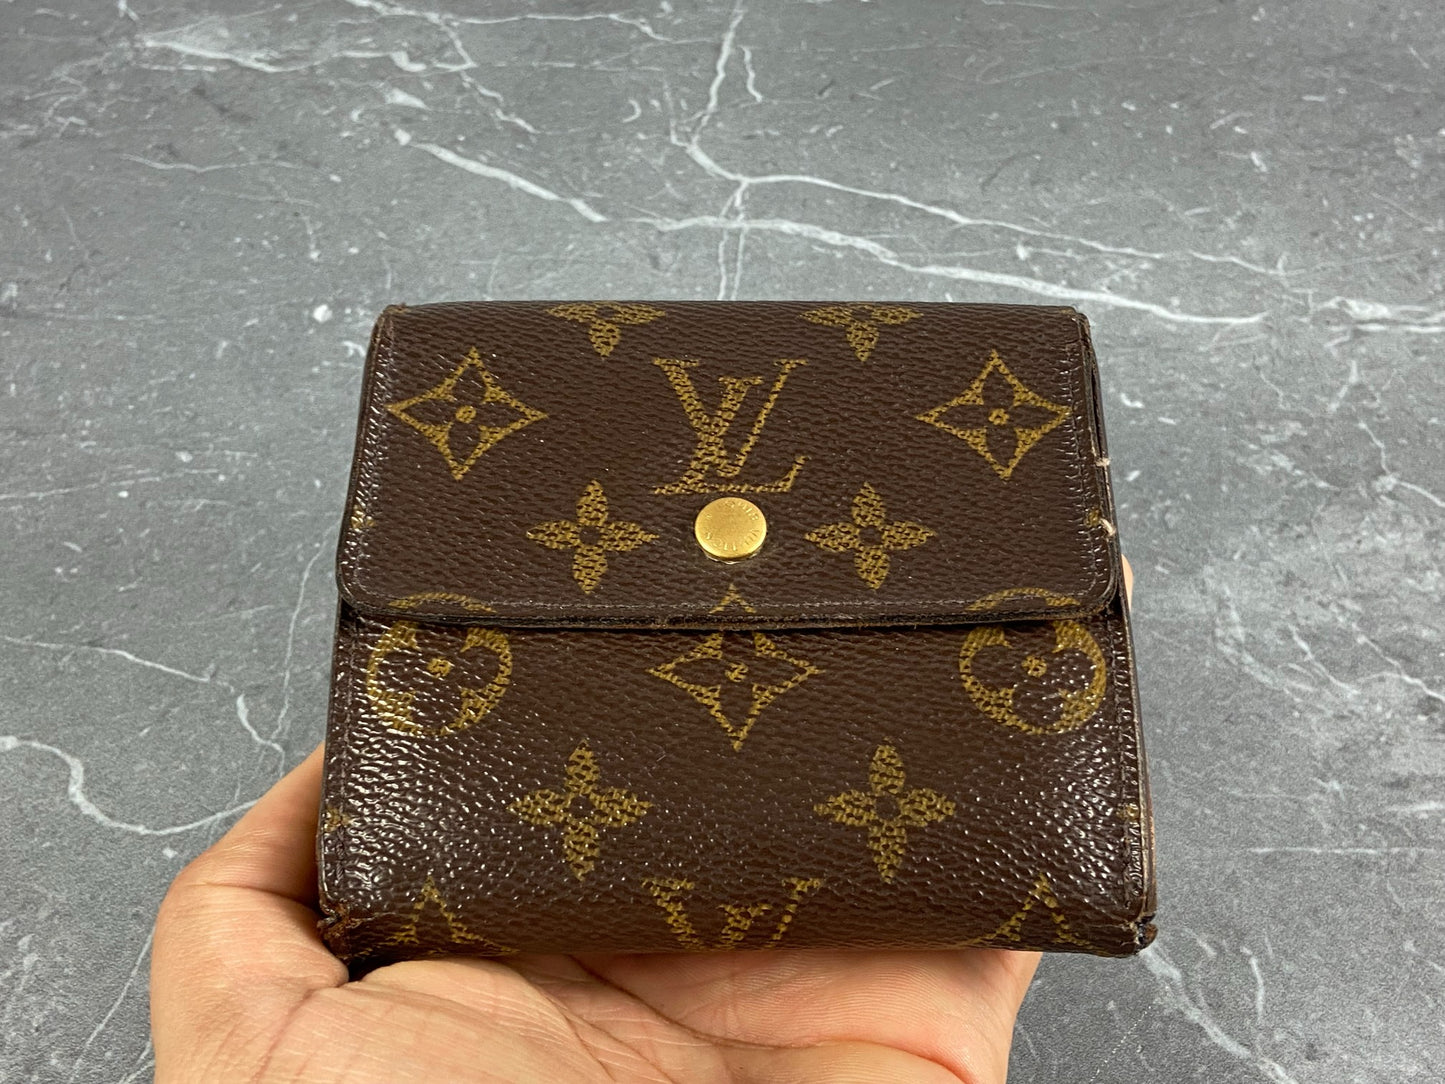 Louis Vuitton Elise Coin purse 280058